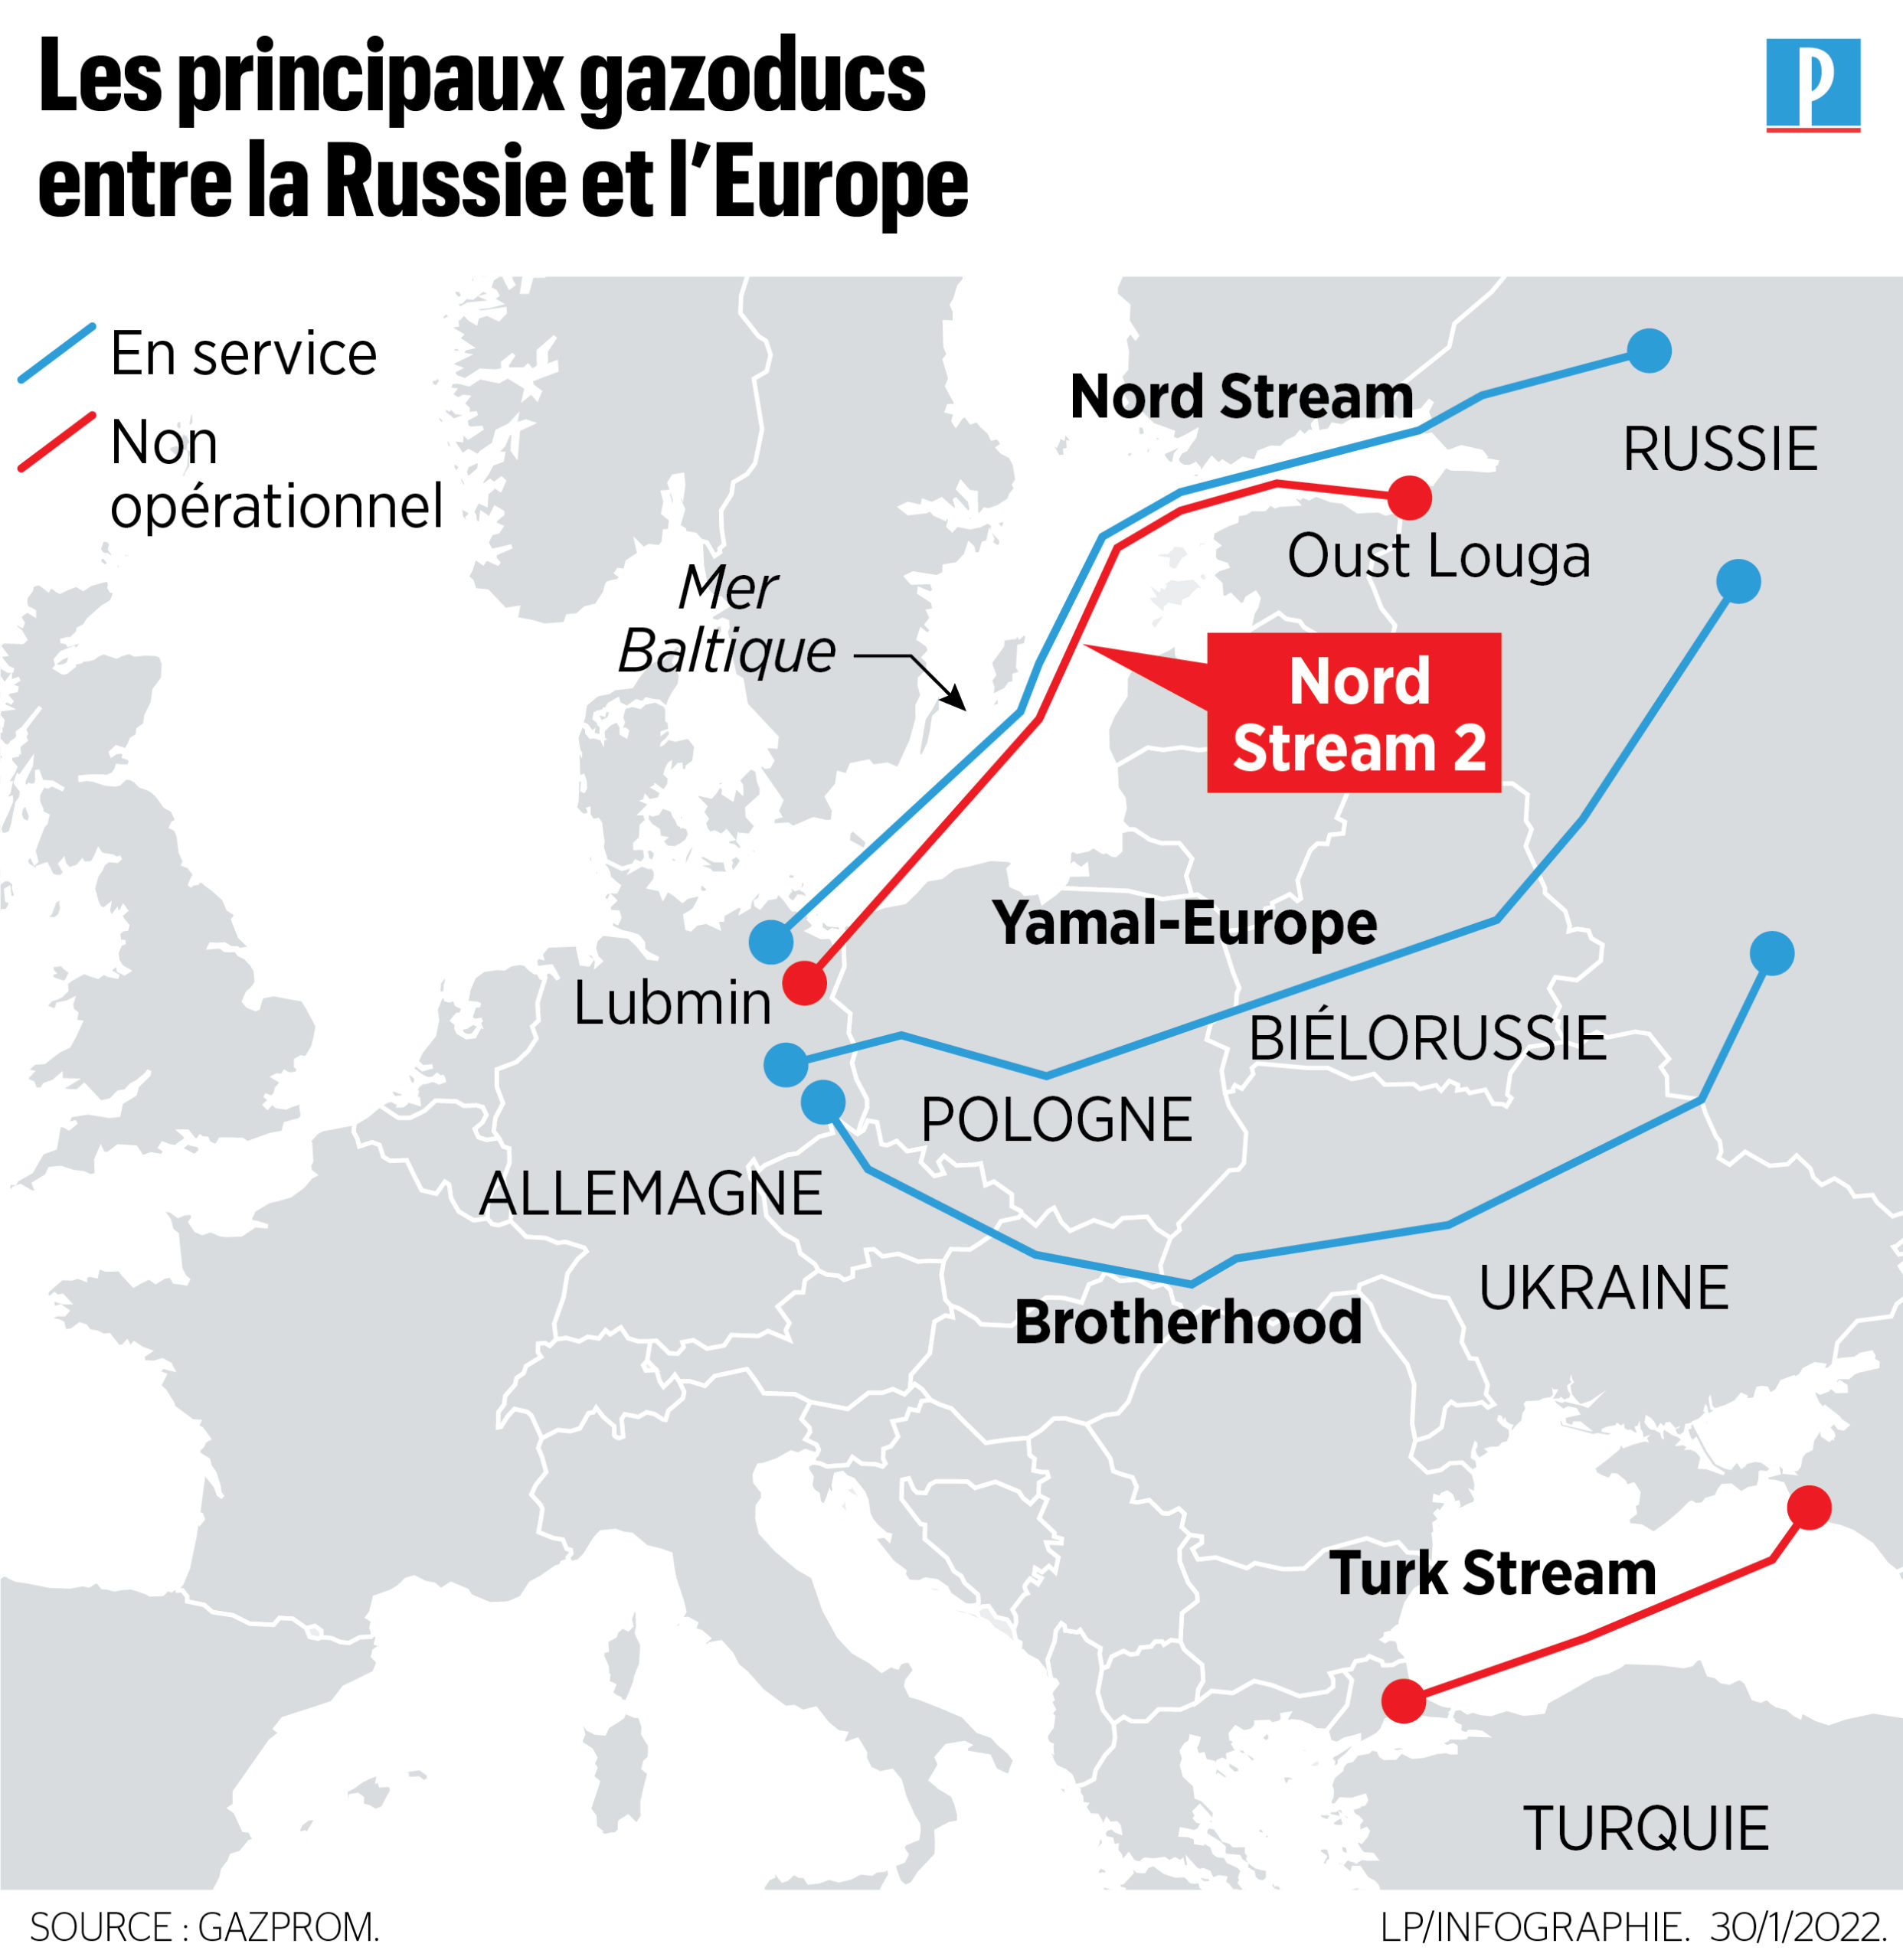 Crise en Ukraine : Le gouvernement allemand stoppe le gazoduc controversé  russe «Nord Stream 2» – Le1